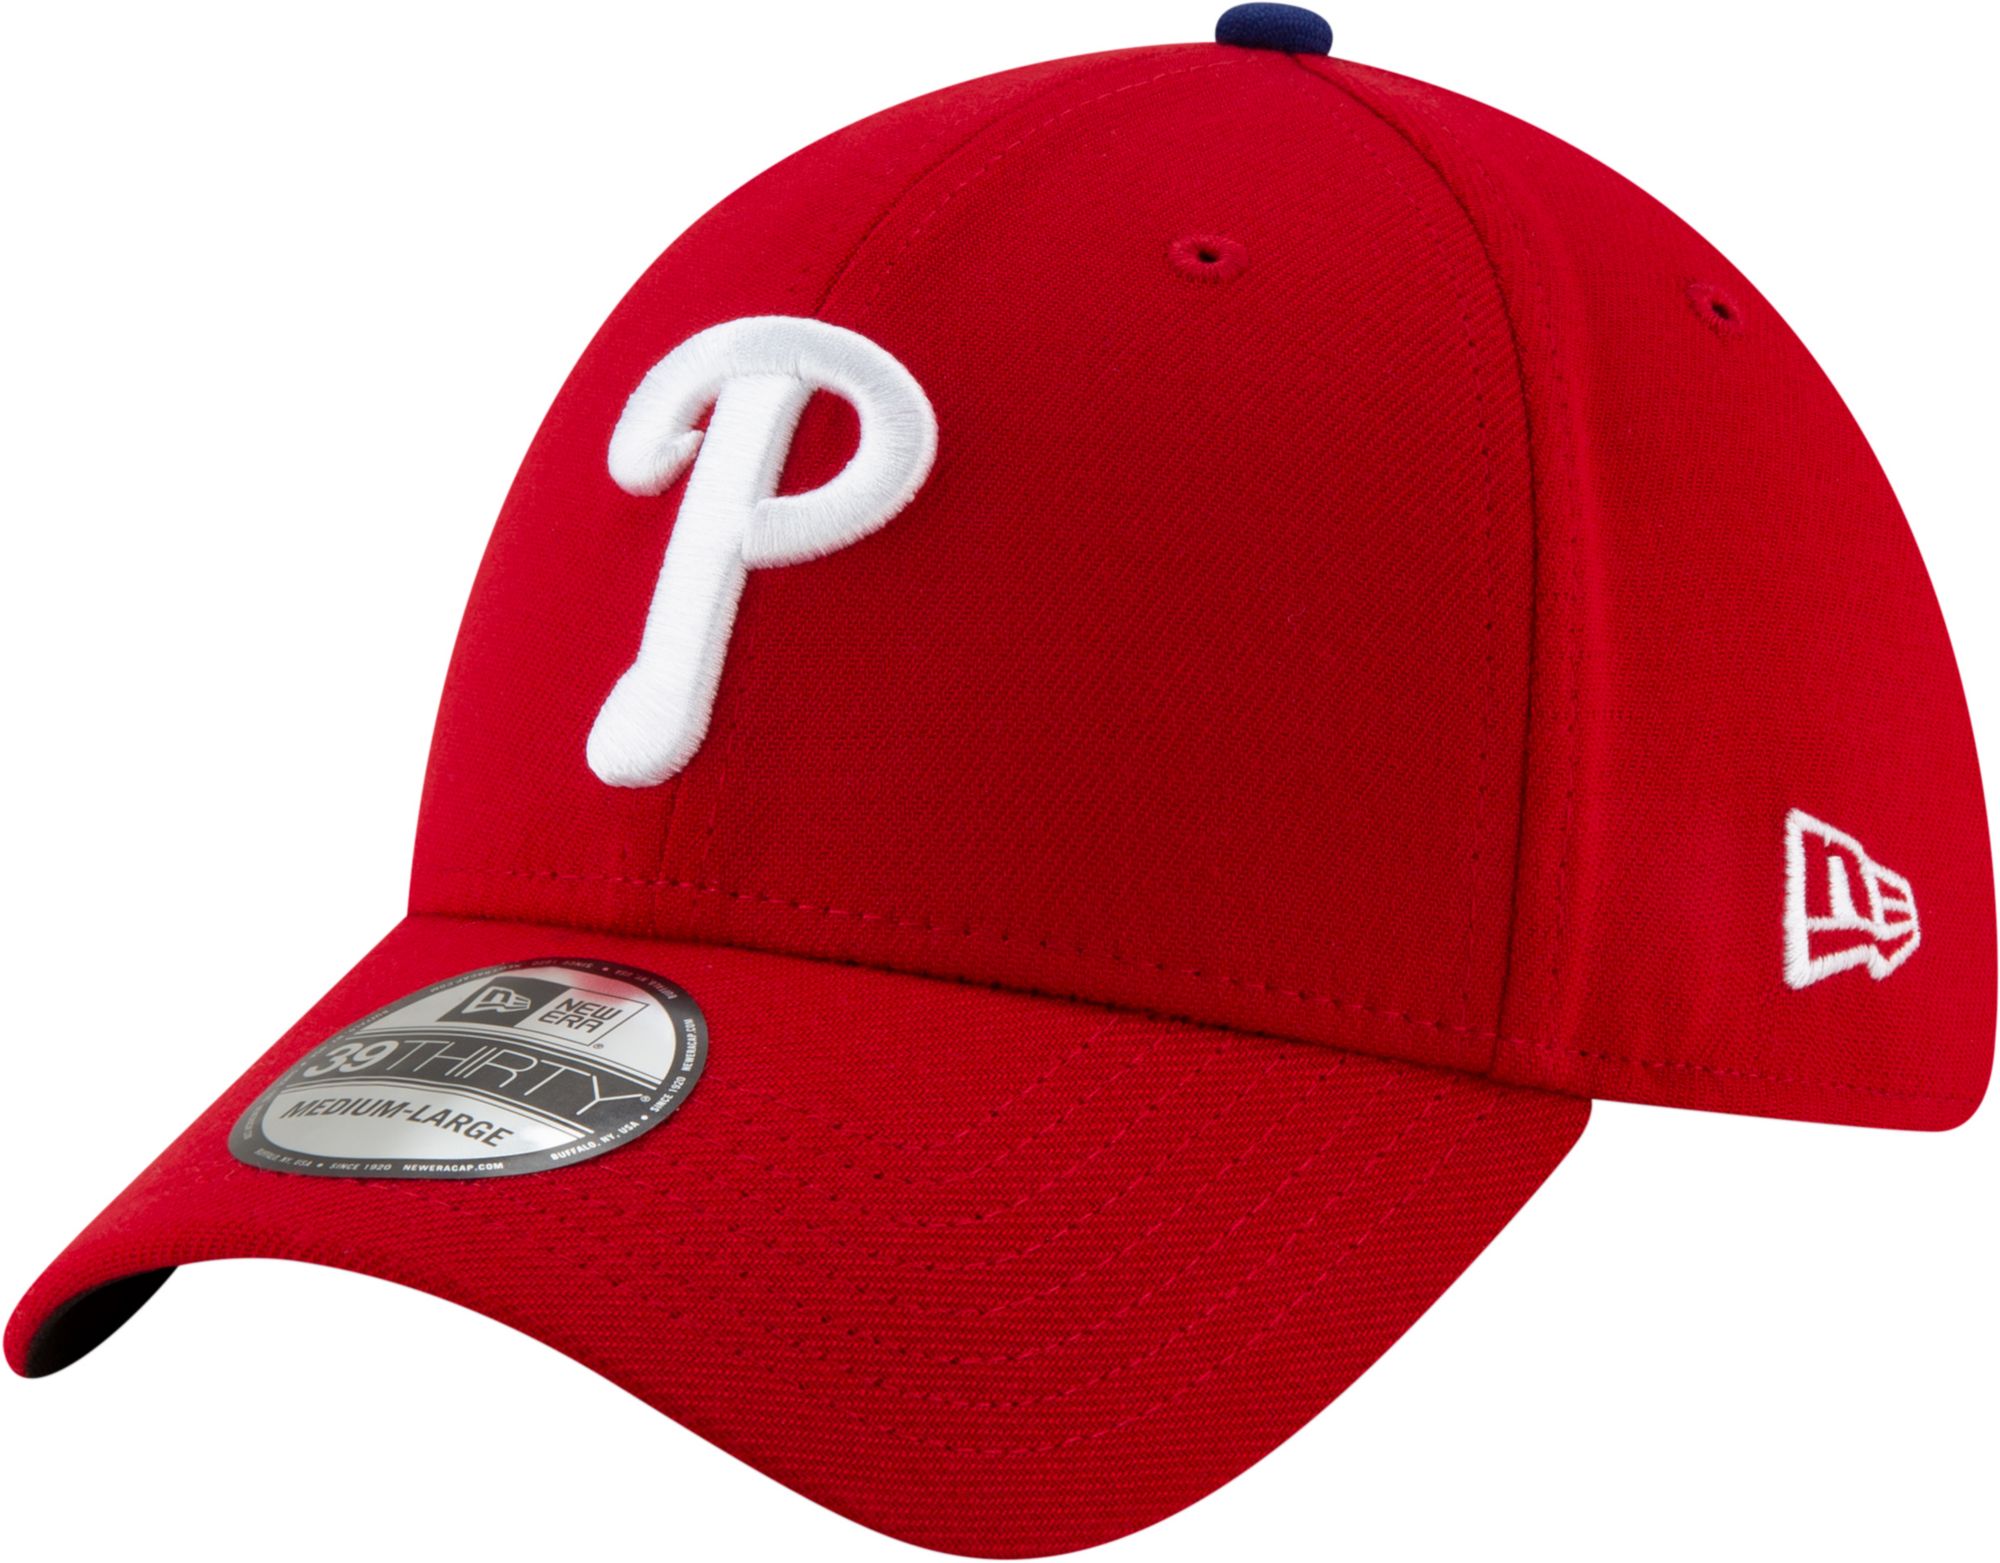 Philadelphia Phillies Women Small TShirt Red MLB J.T. Realmuto 10 Pullover  01143